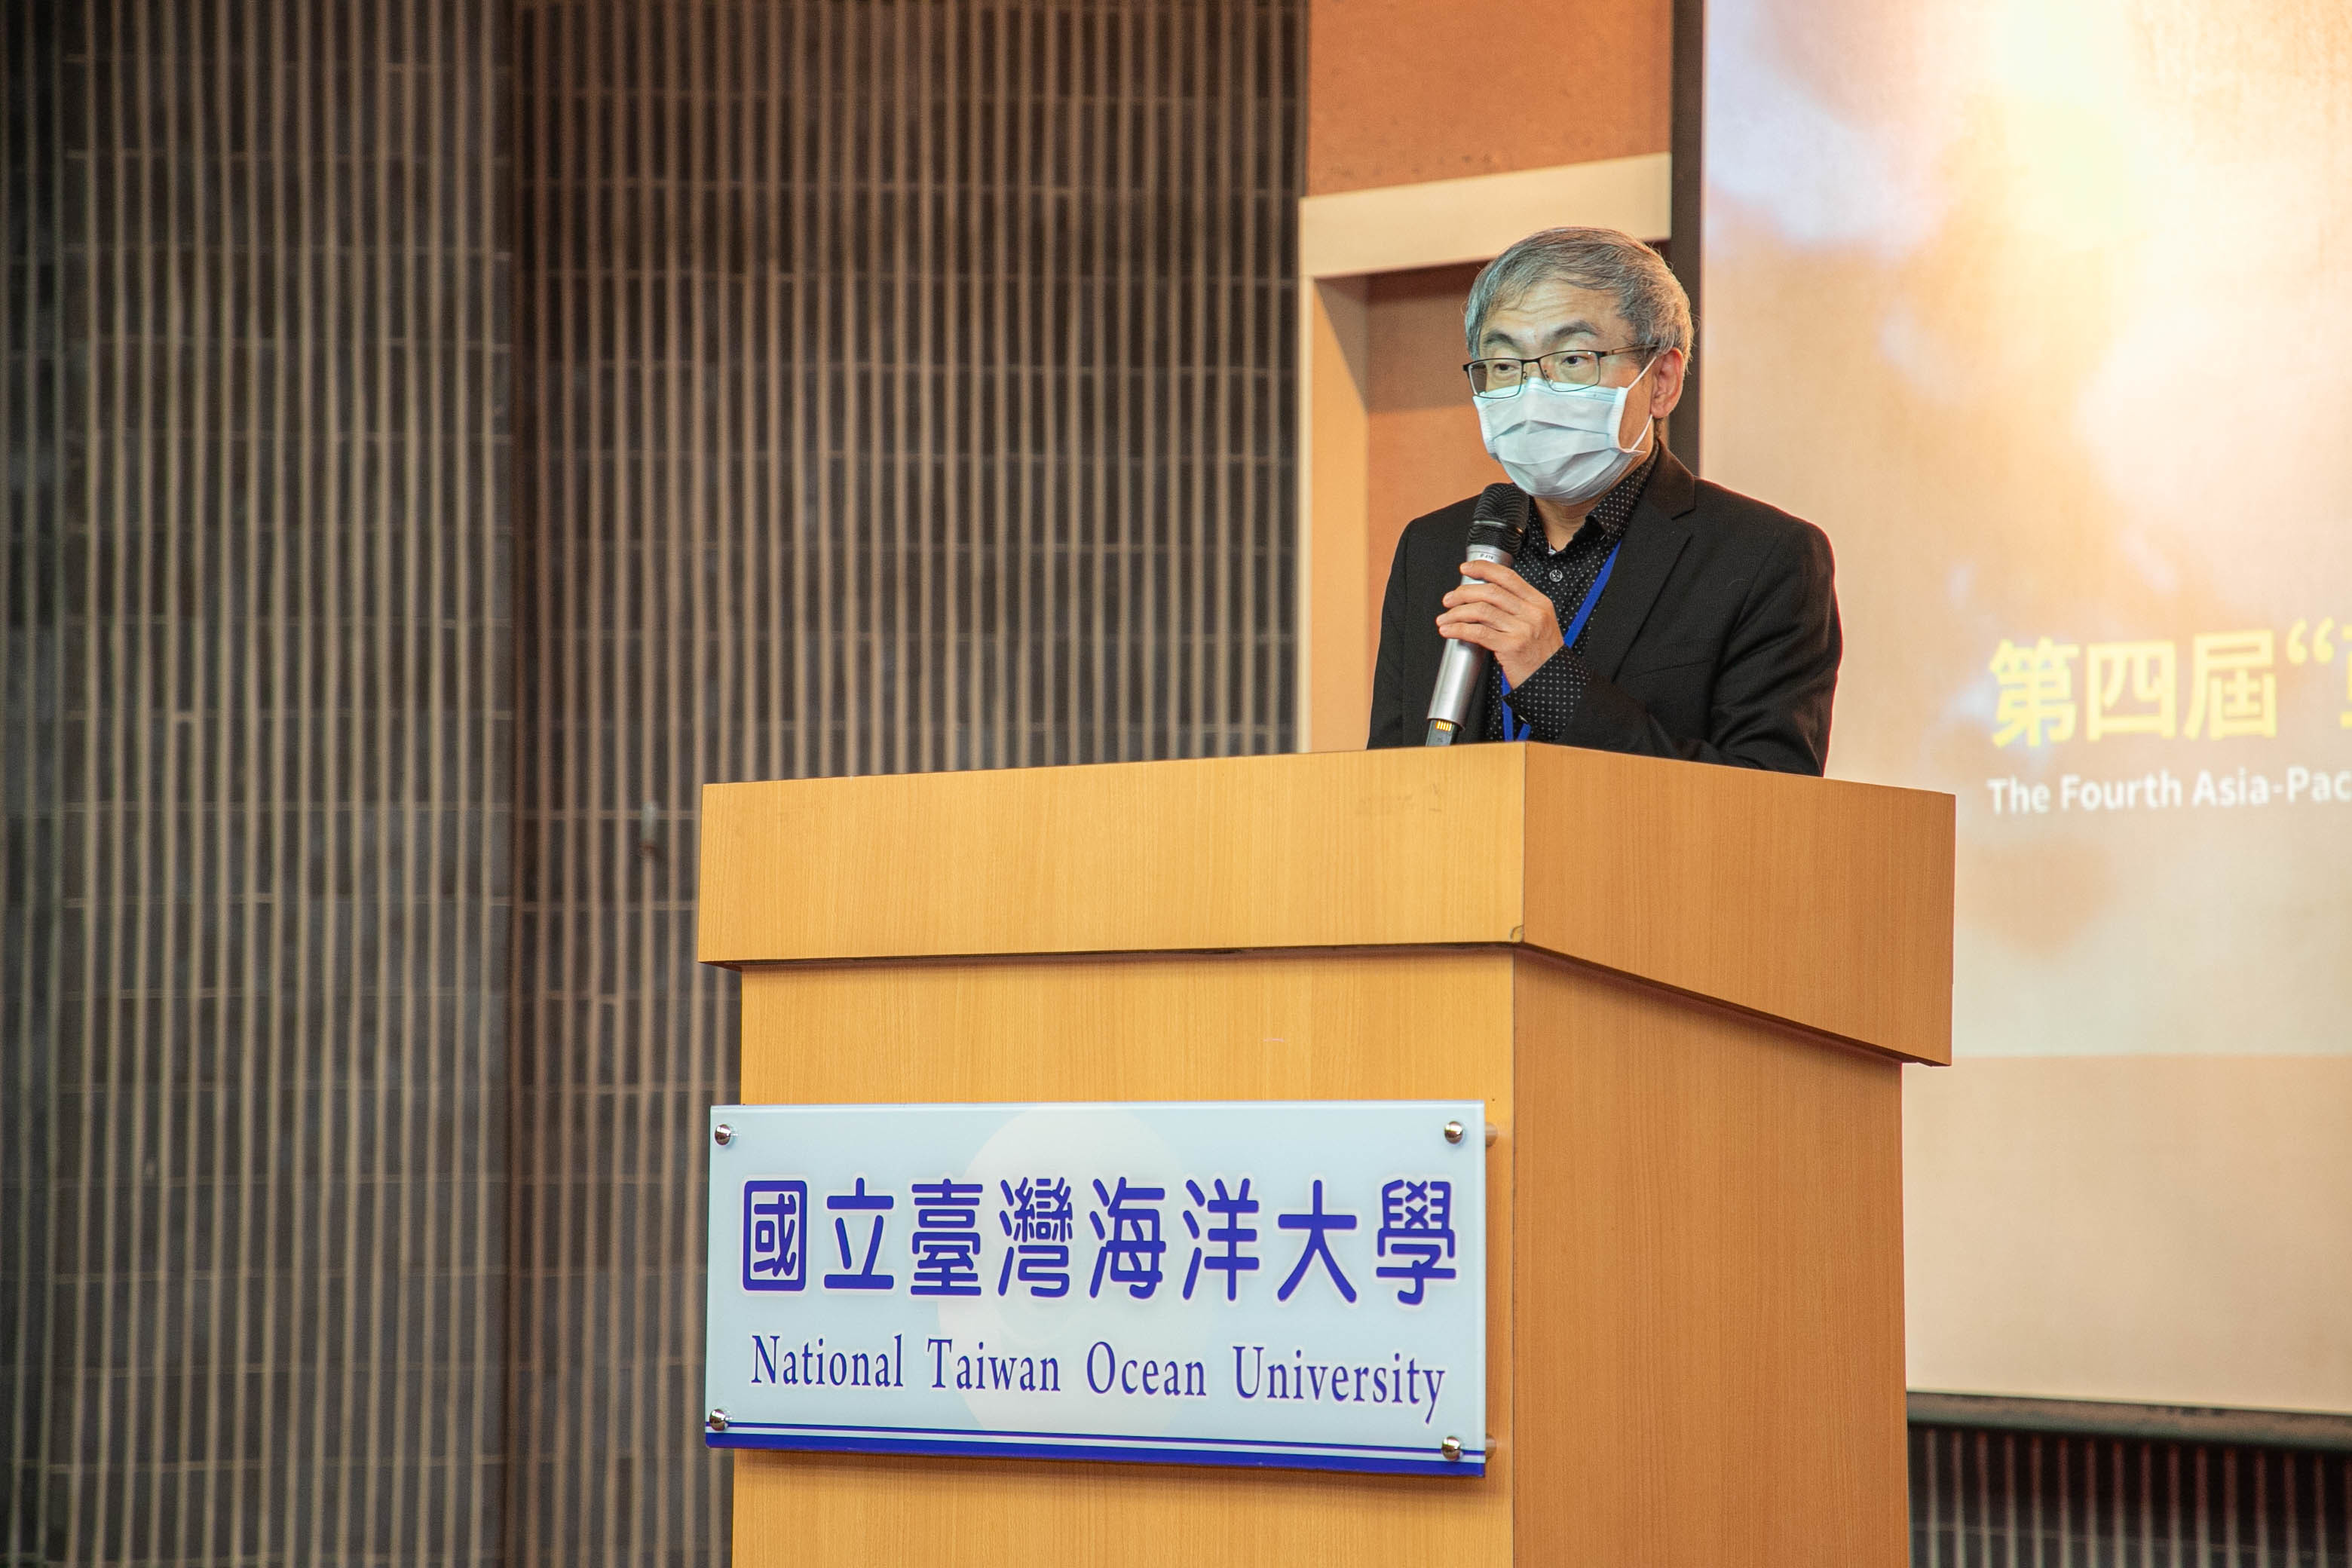 文化部文化資產局局長陳濟民希望還有機會邀請國外學者到臺灣來從事水下文化研究交流